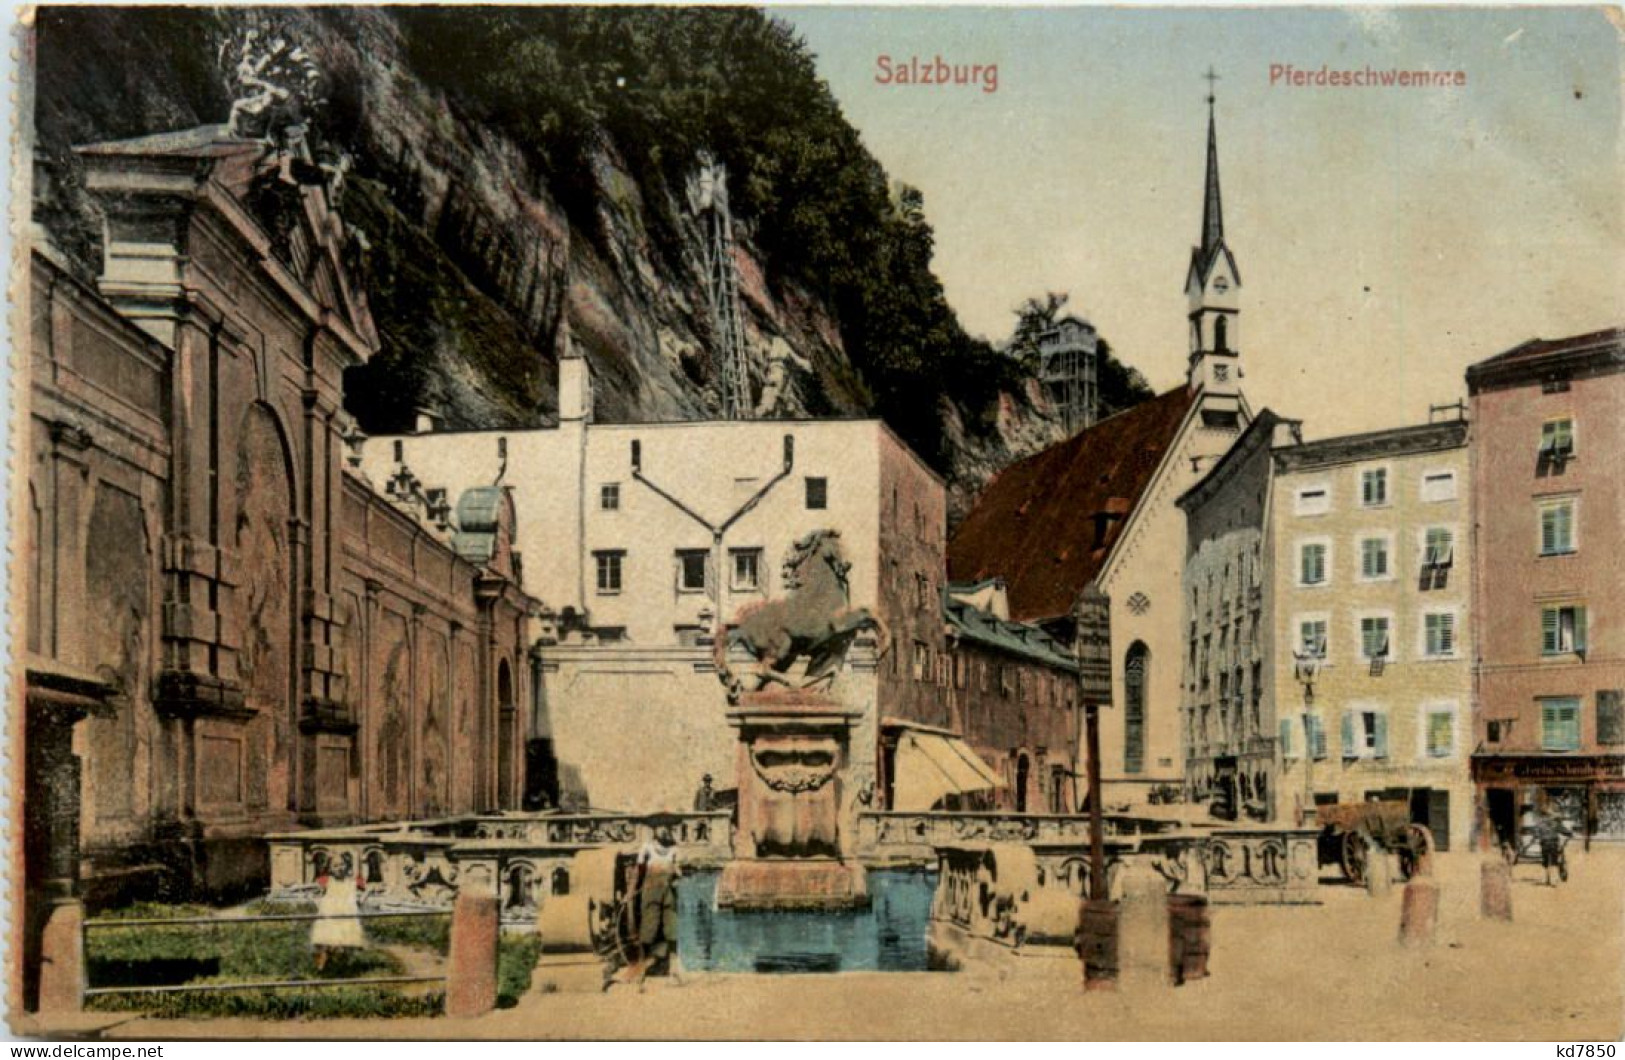 Salzburg, Pferdeschwemme - Salzburg Stadt